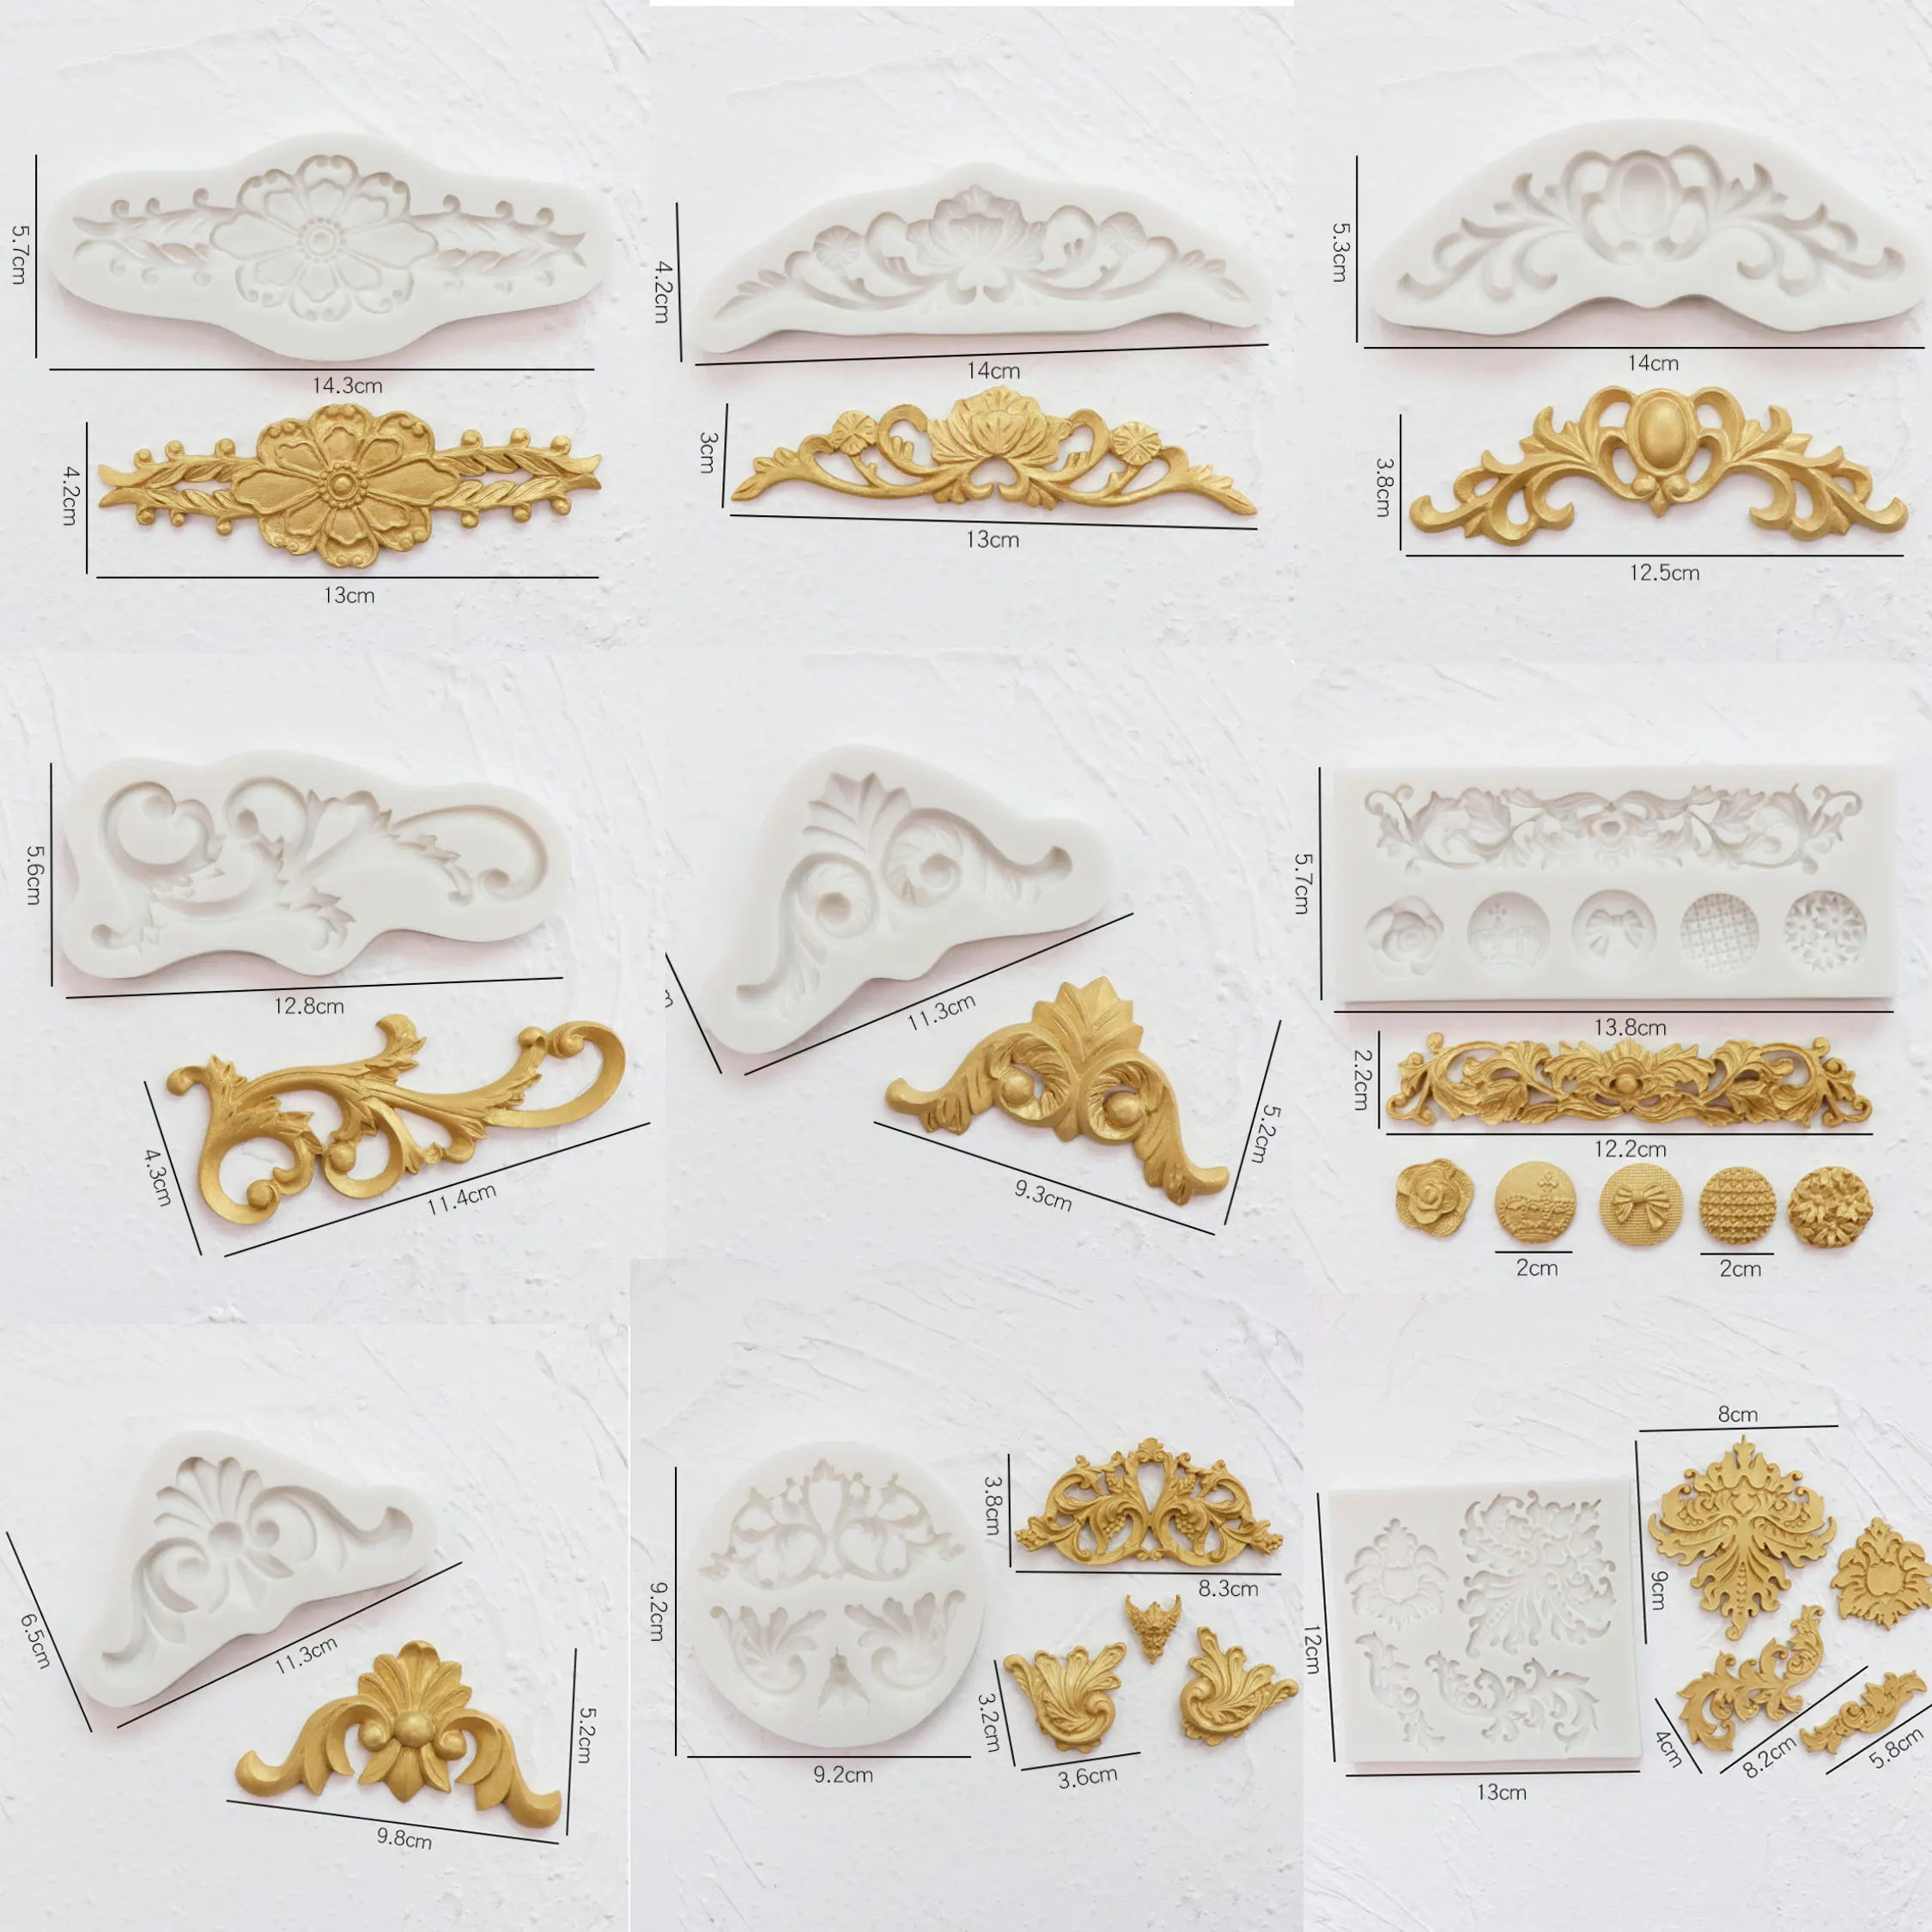 

Рельефный силиконовый пресс-форм штамповый торт декоративные инструменты формы для шоколадной мастики, сахара, Кухня гаджет